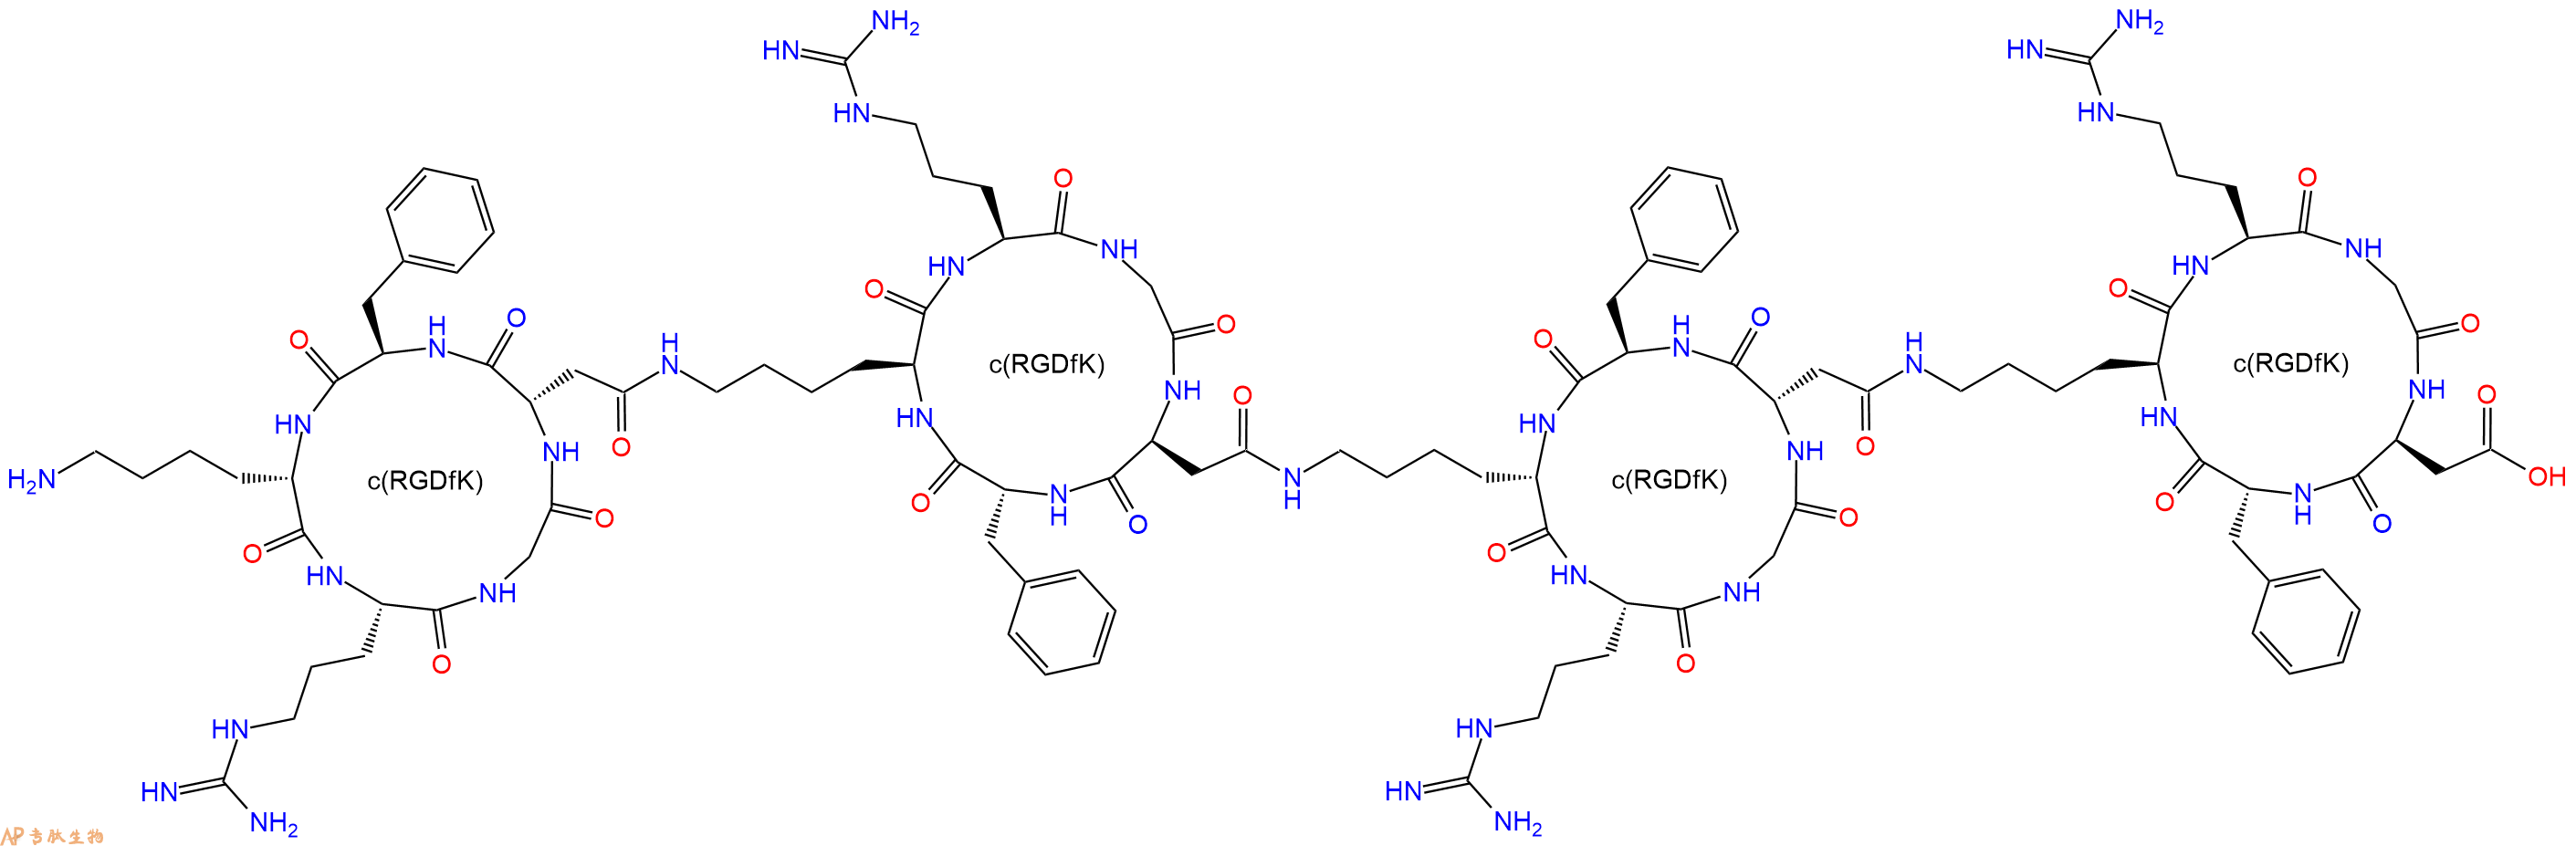 多肽计算器-画多肽结构的计算器：如何画肽段和RGD环肽的相结合的结构？